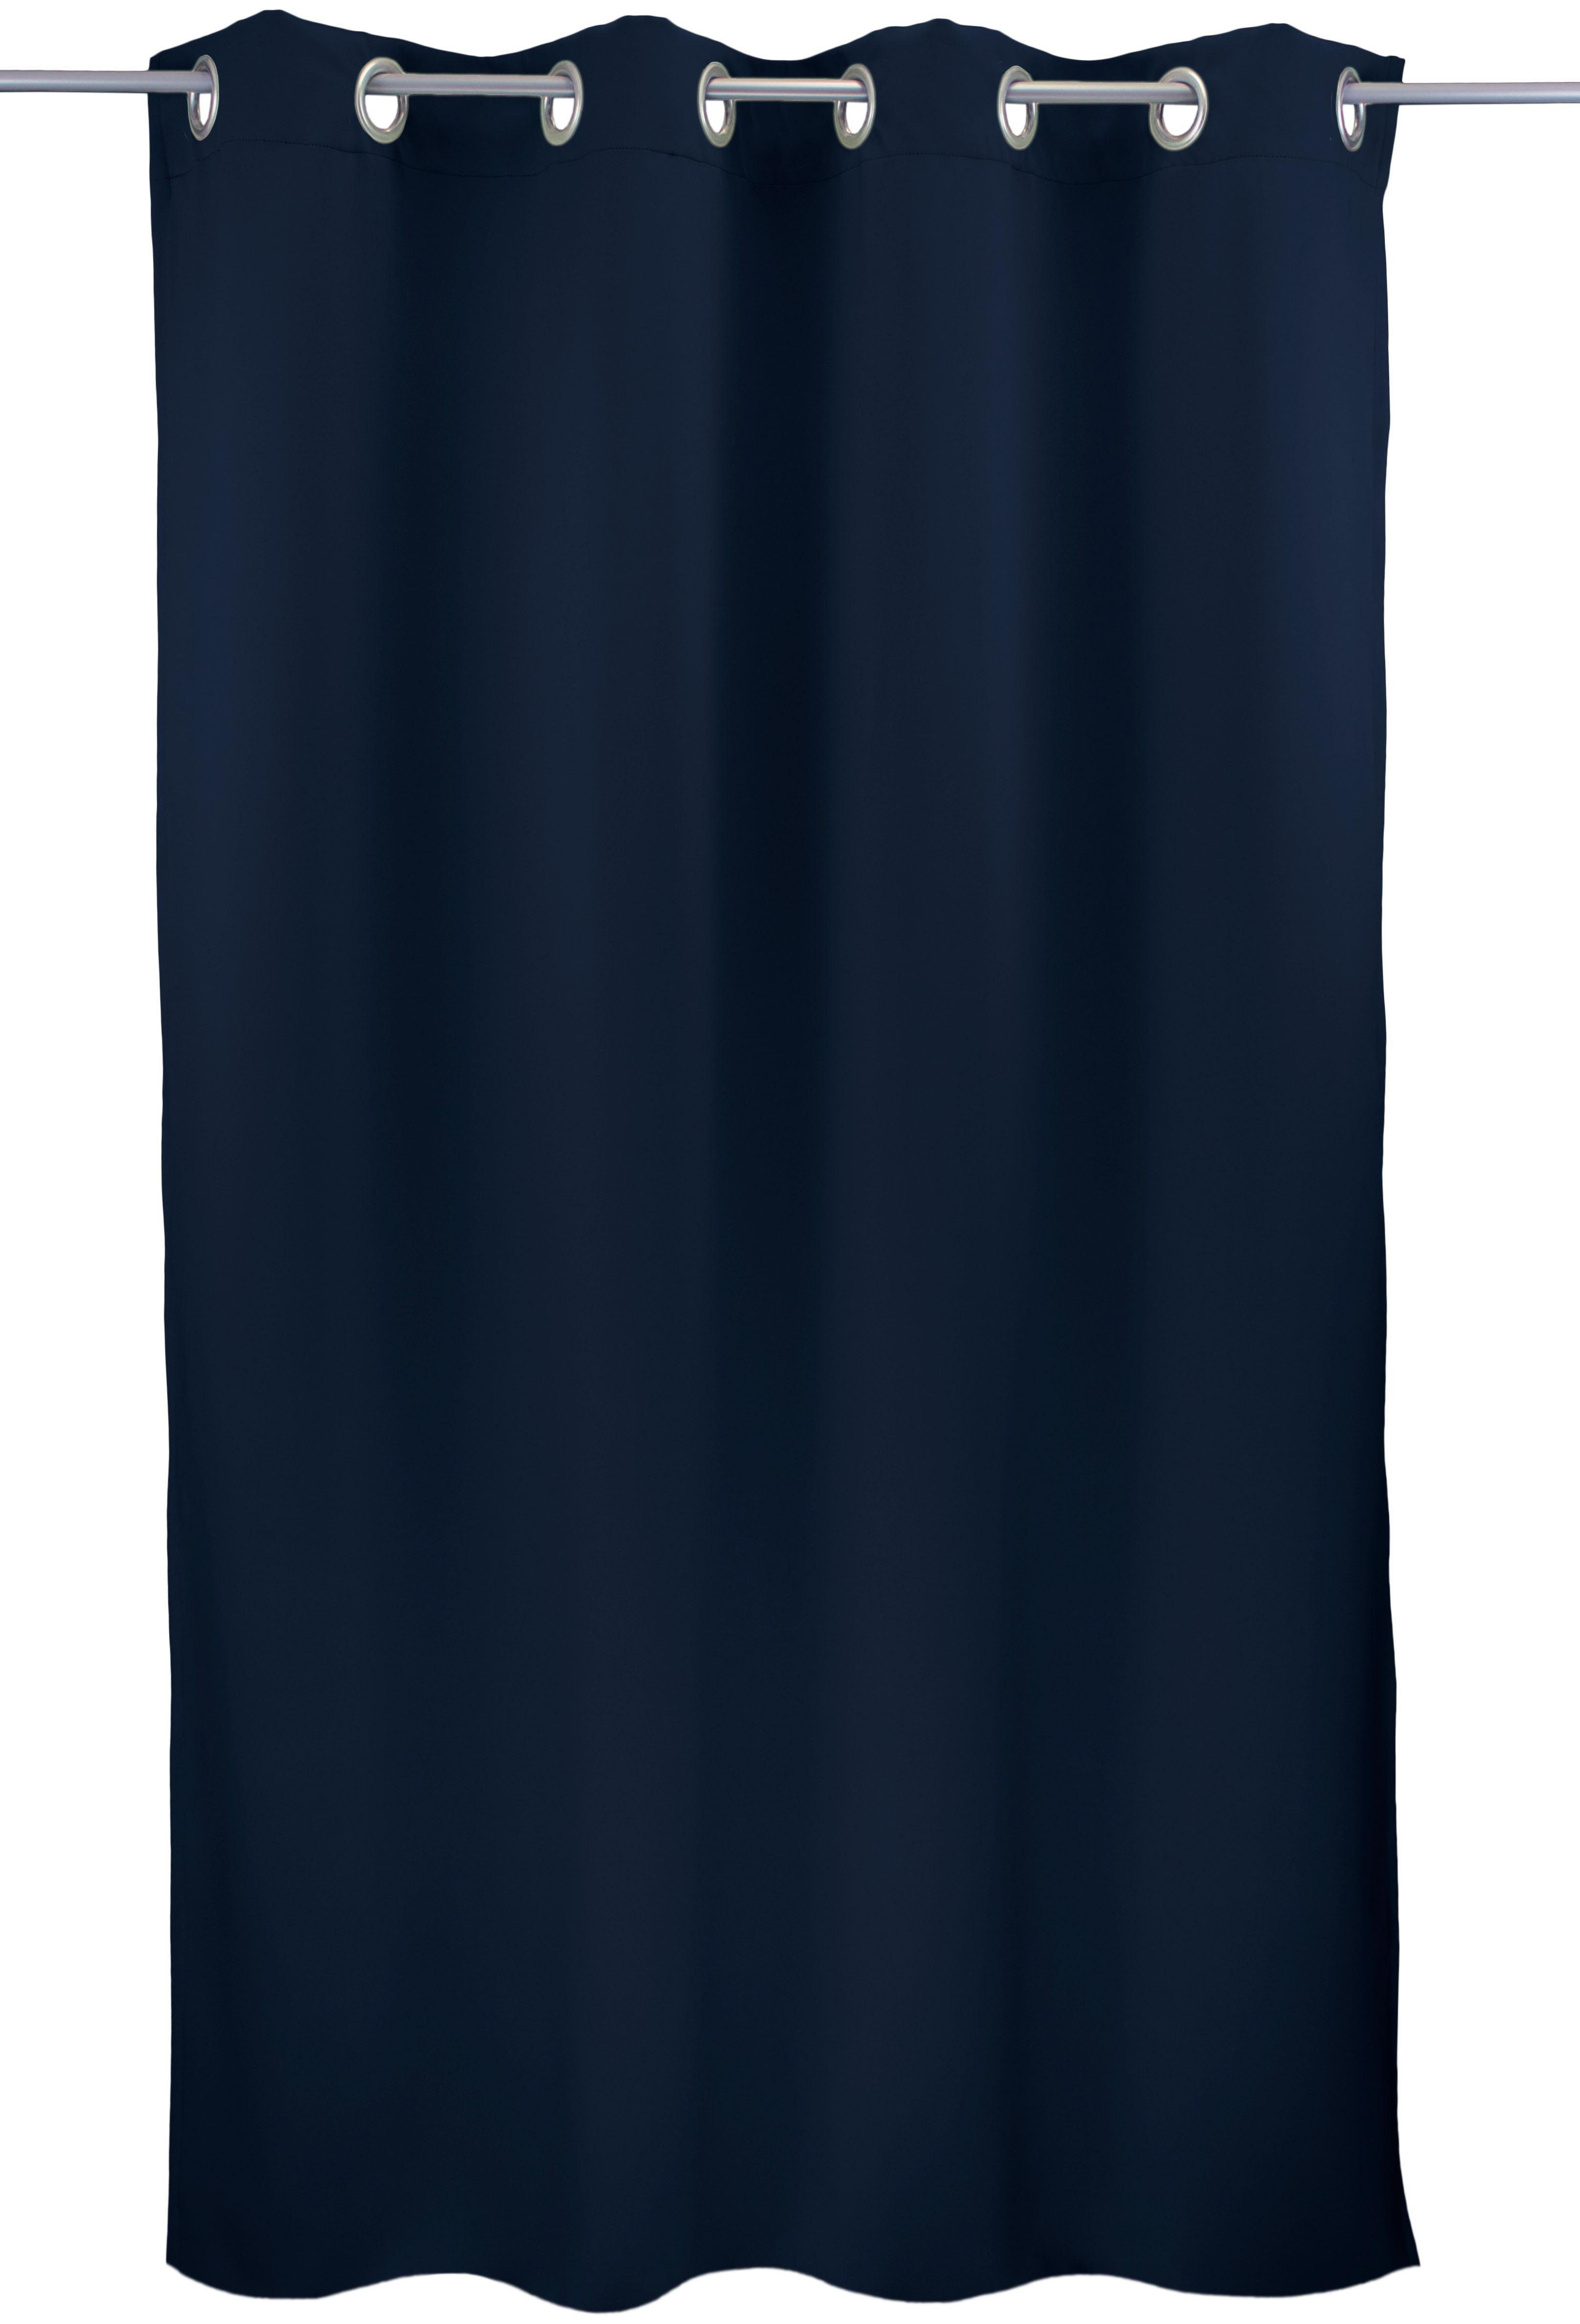 Vorhang Leon1, VHG, Ösen (1 St), verdunkelnd dunkelblau